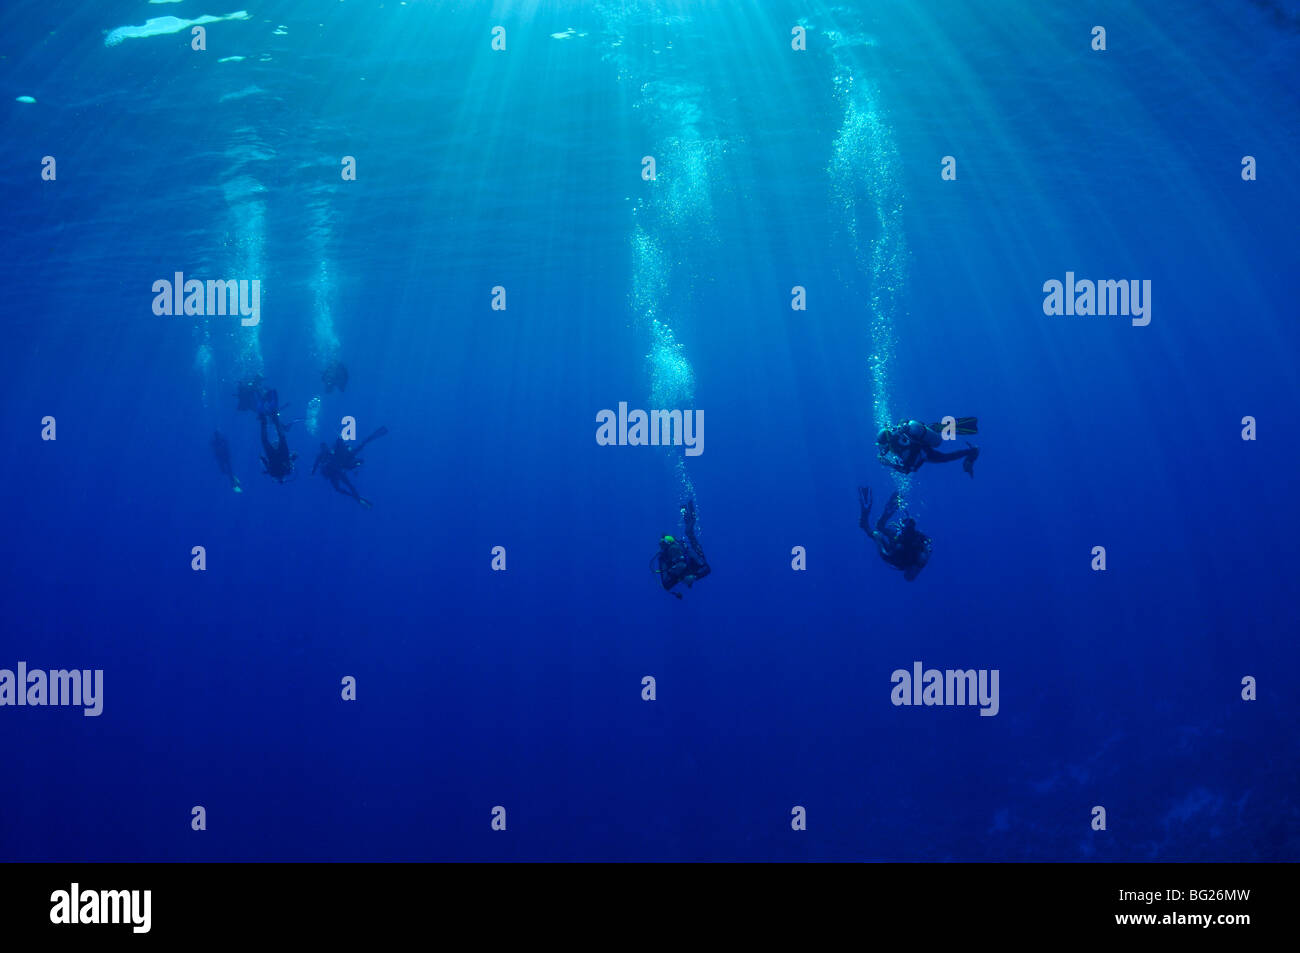 Groupe de plongeurs dans l'eau bleue avec du soleil Banque D'Images